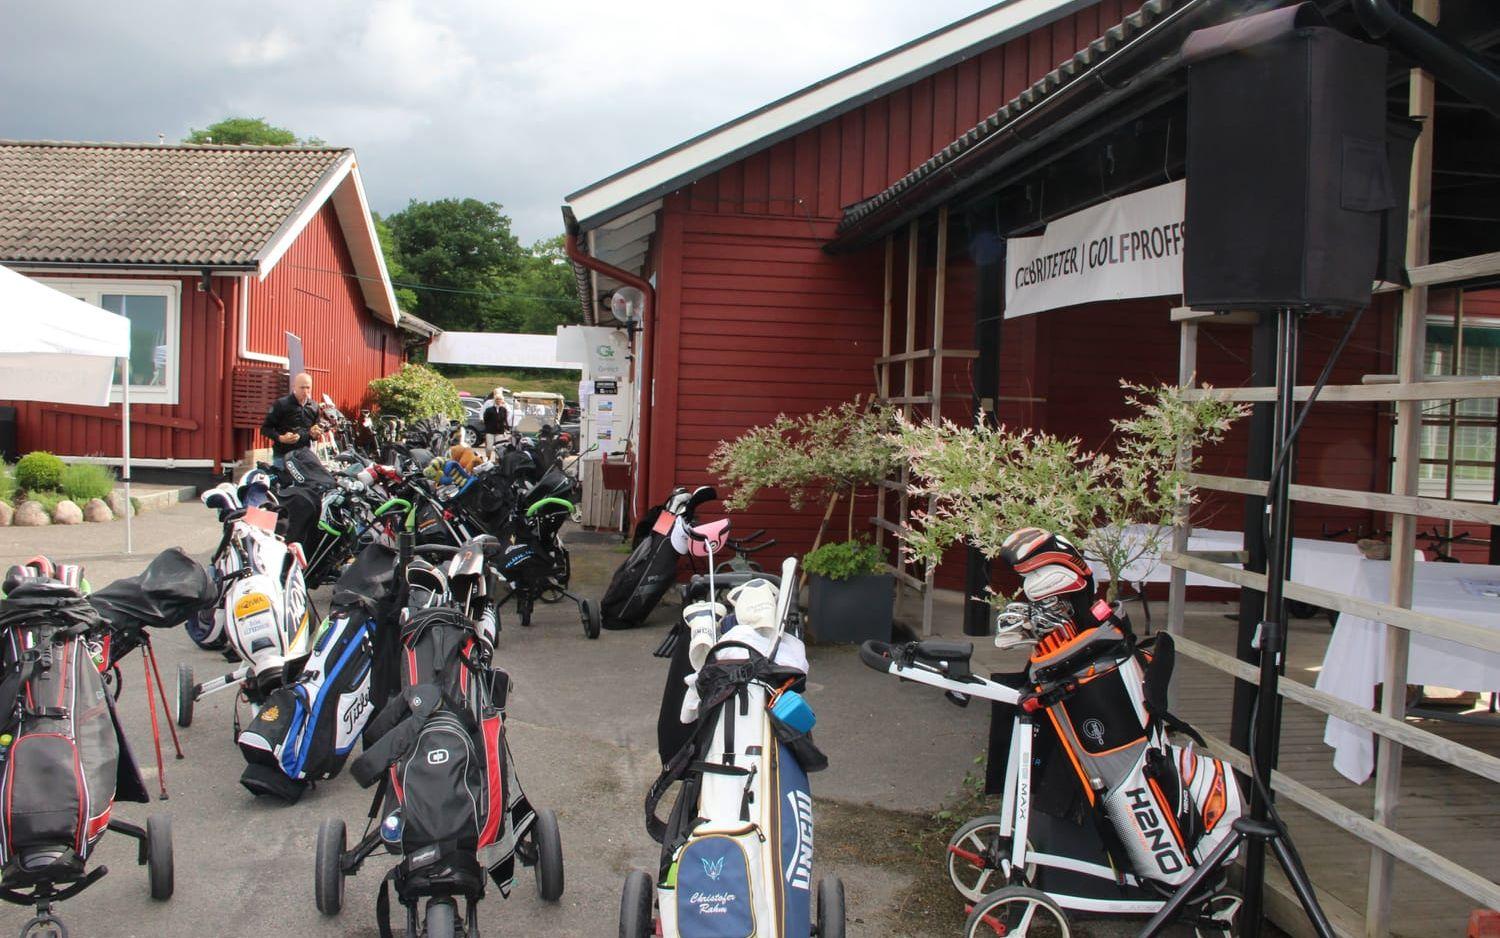 Kungsbacka golfklubb stod i år för första gången som arrangör av Barngolfen som tidigare spelats på Hills i Mölndal.